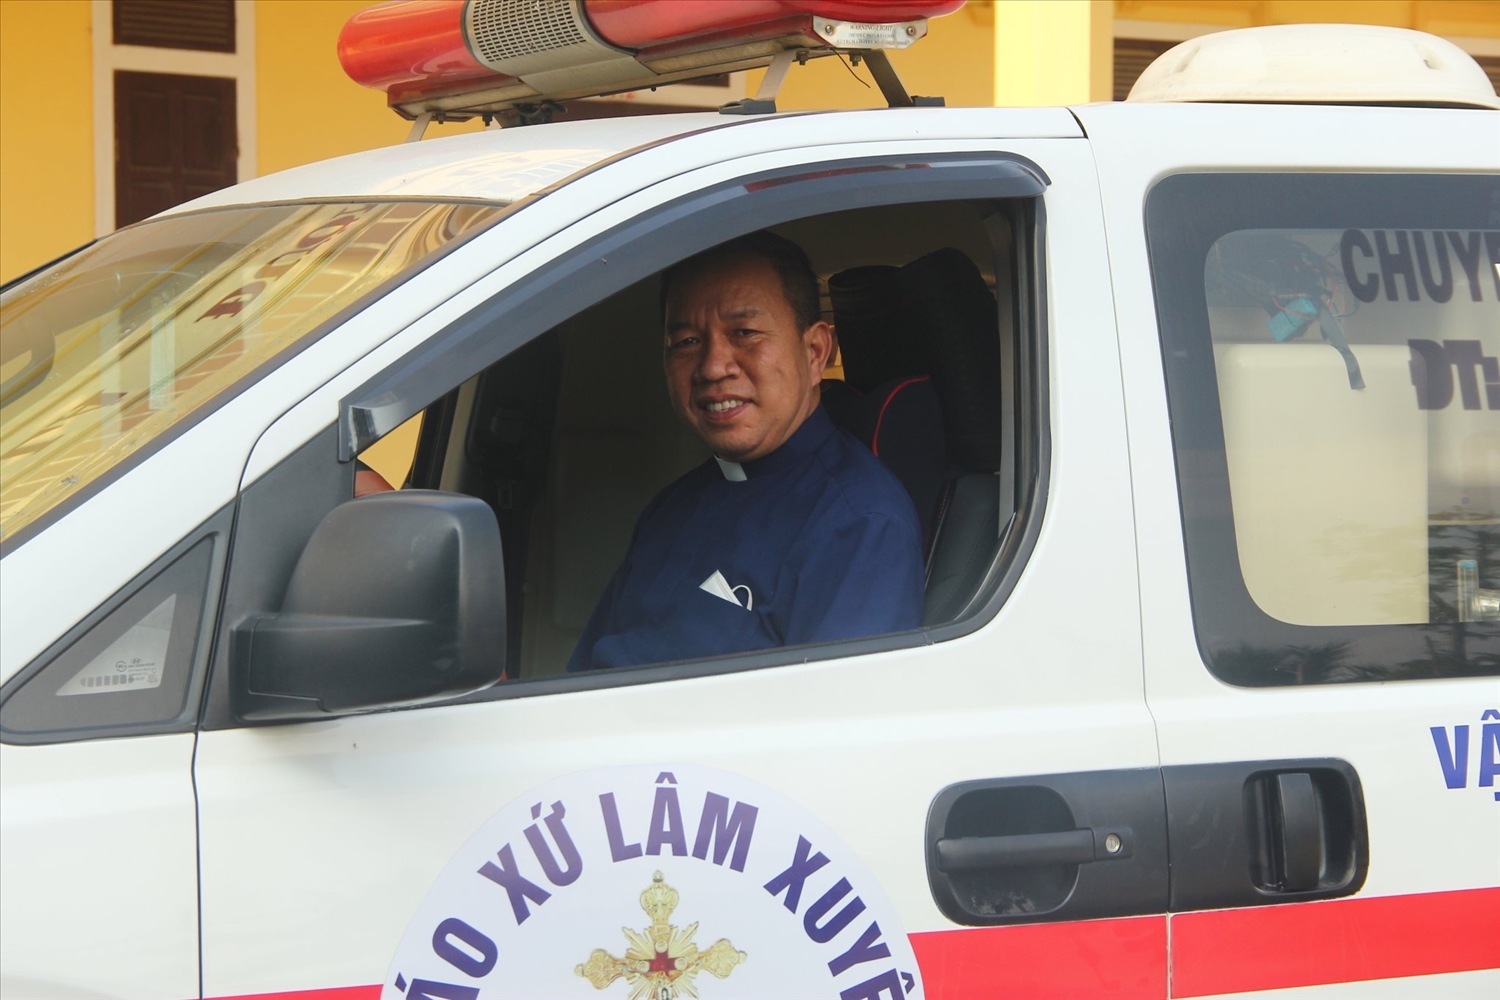  Linh mục quản xứ Lâm Xuyên - Giuse Nguyễn Xuân Phương chuẩn bị lên đường vận chuyển cấp cứu bệnh nhân